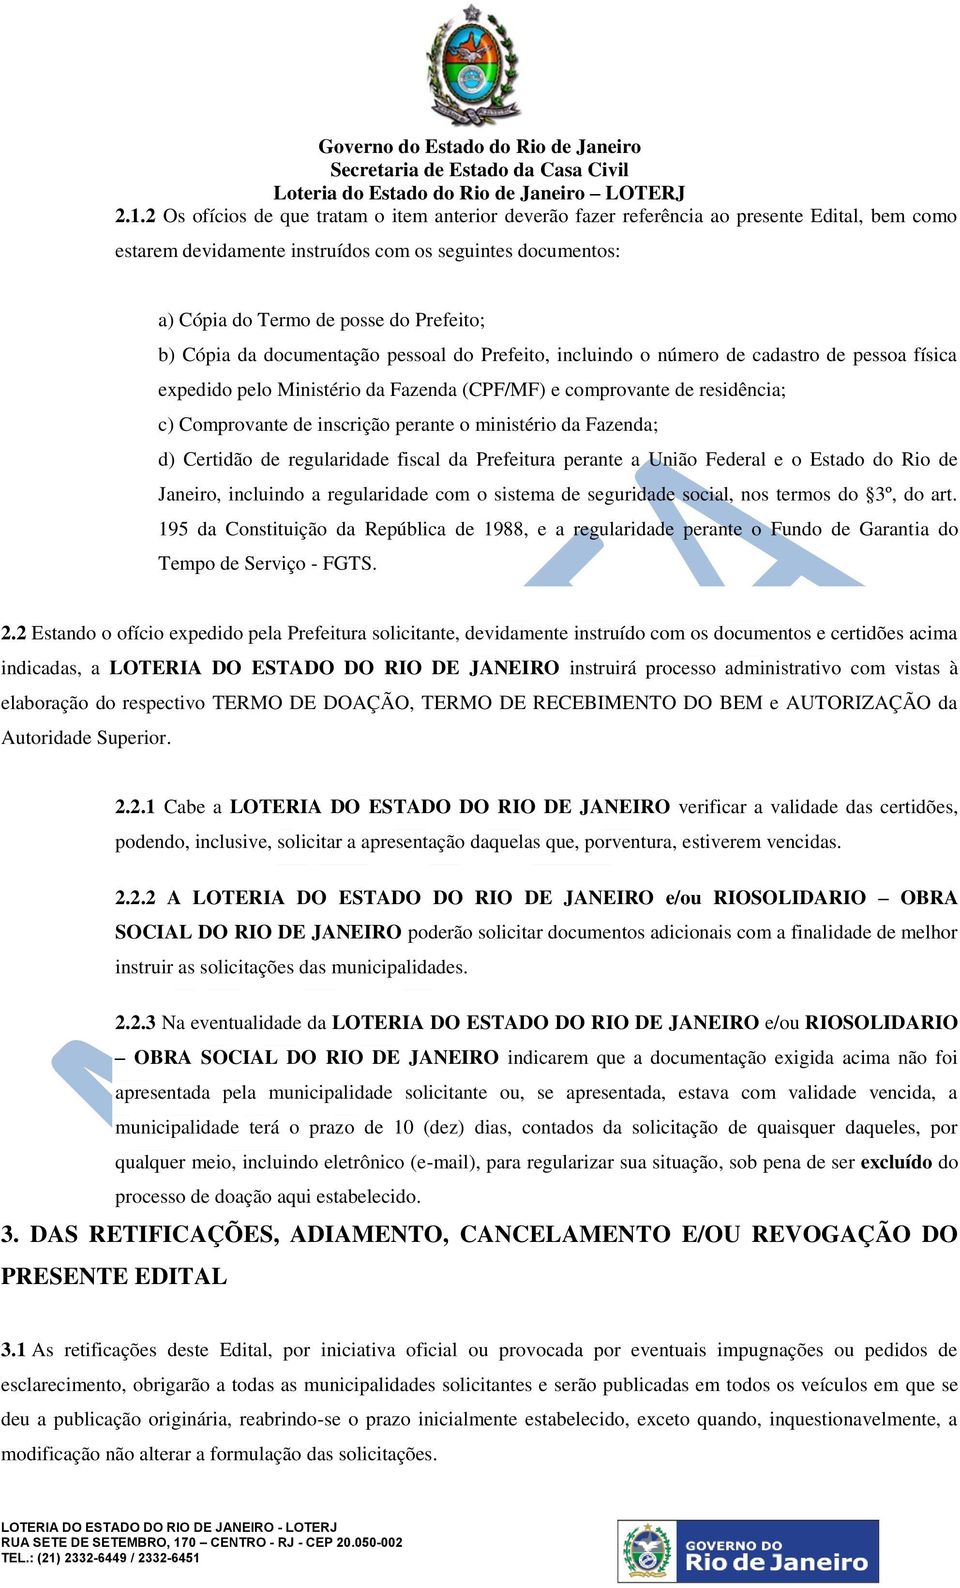 inscrição perante o ministério da Fazenda; d) Certidão de regularidade fiscal da Prefeitura perante a União Federal e o Estado do Rio de Janeiro, incluindo a regularidade com o sistema de seguridade